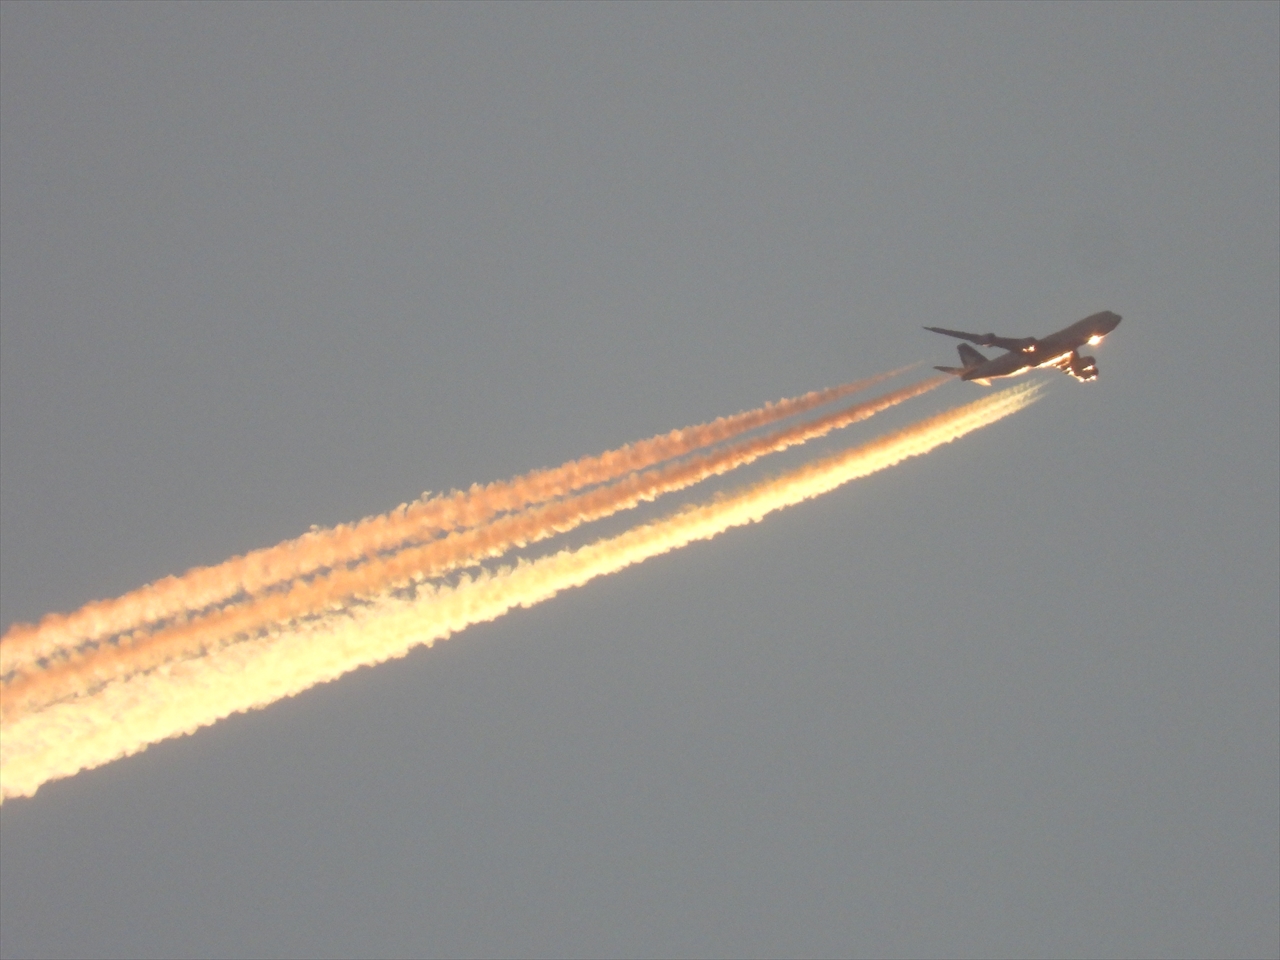 DSCN2851朝陽を浴びて赤く染まるジェット機と飛行機雲２０２２年１１月２２日AM６：４３